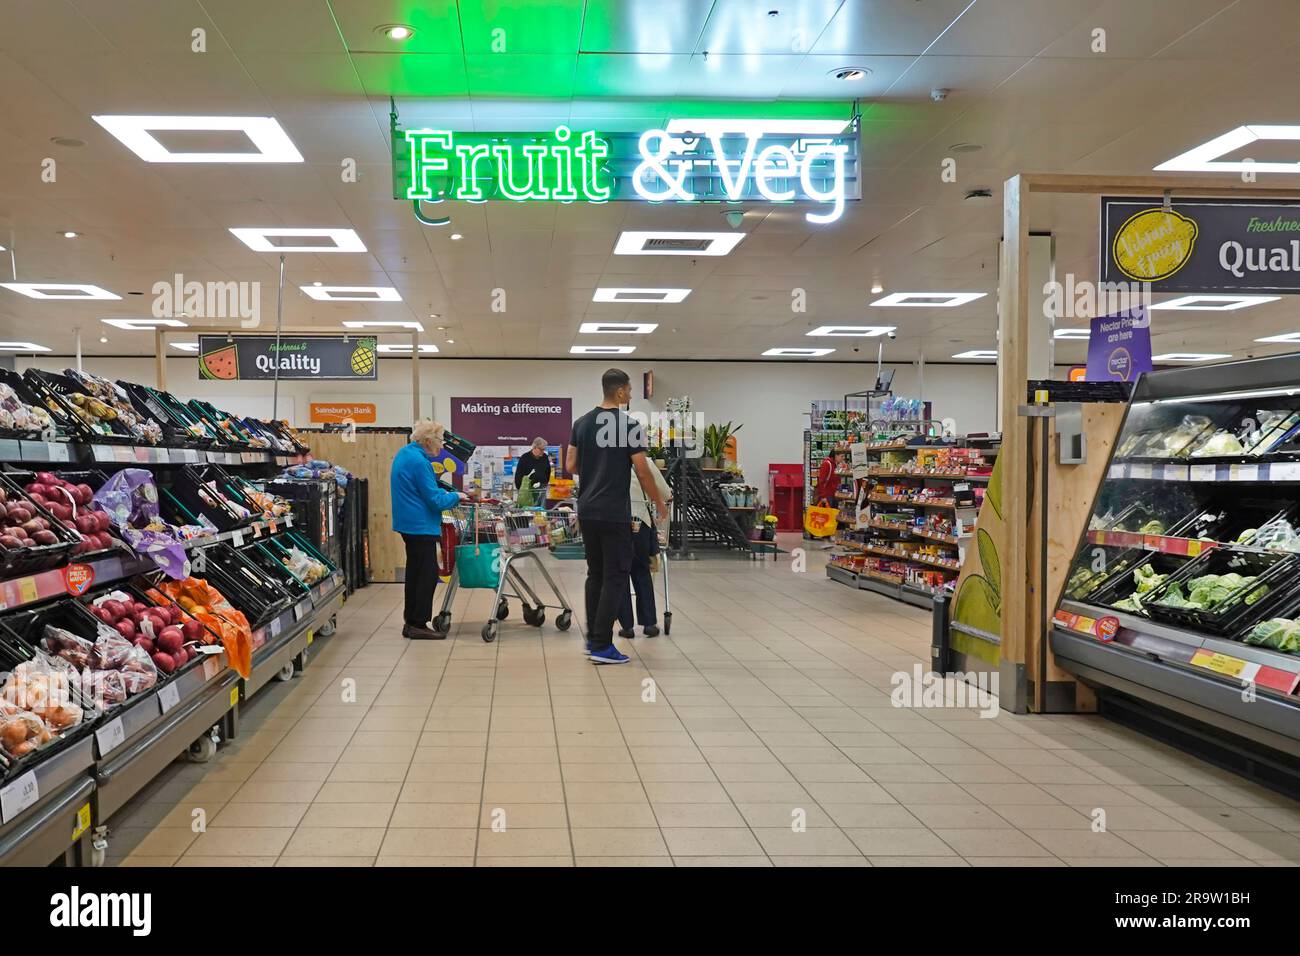 Innenansicht der Kunden, die im Fruit & Veg Department des Supermarktes Sainsburys einkaufen, mit beleuchtetem Schild Essex England UK Stockfoto